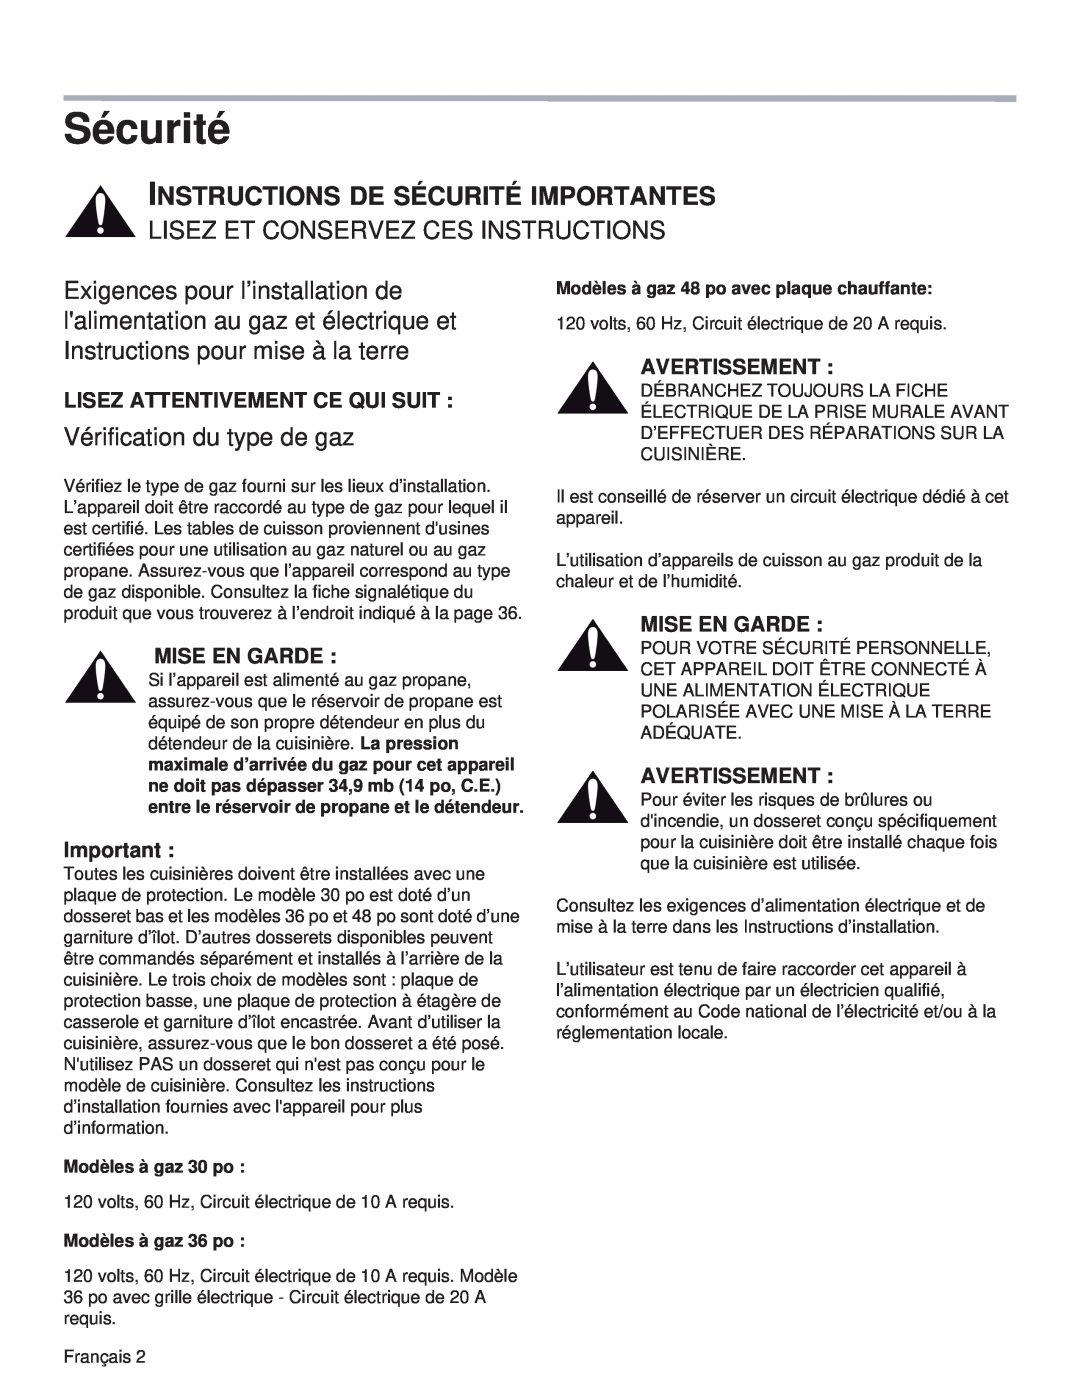 Thermador PRL36 Sécurité, Lisez Et Conservez Ces Instructions, Vérification du type de gaz, Mise En Garde, Avertissement 